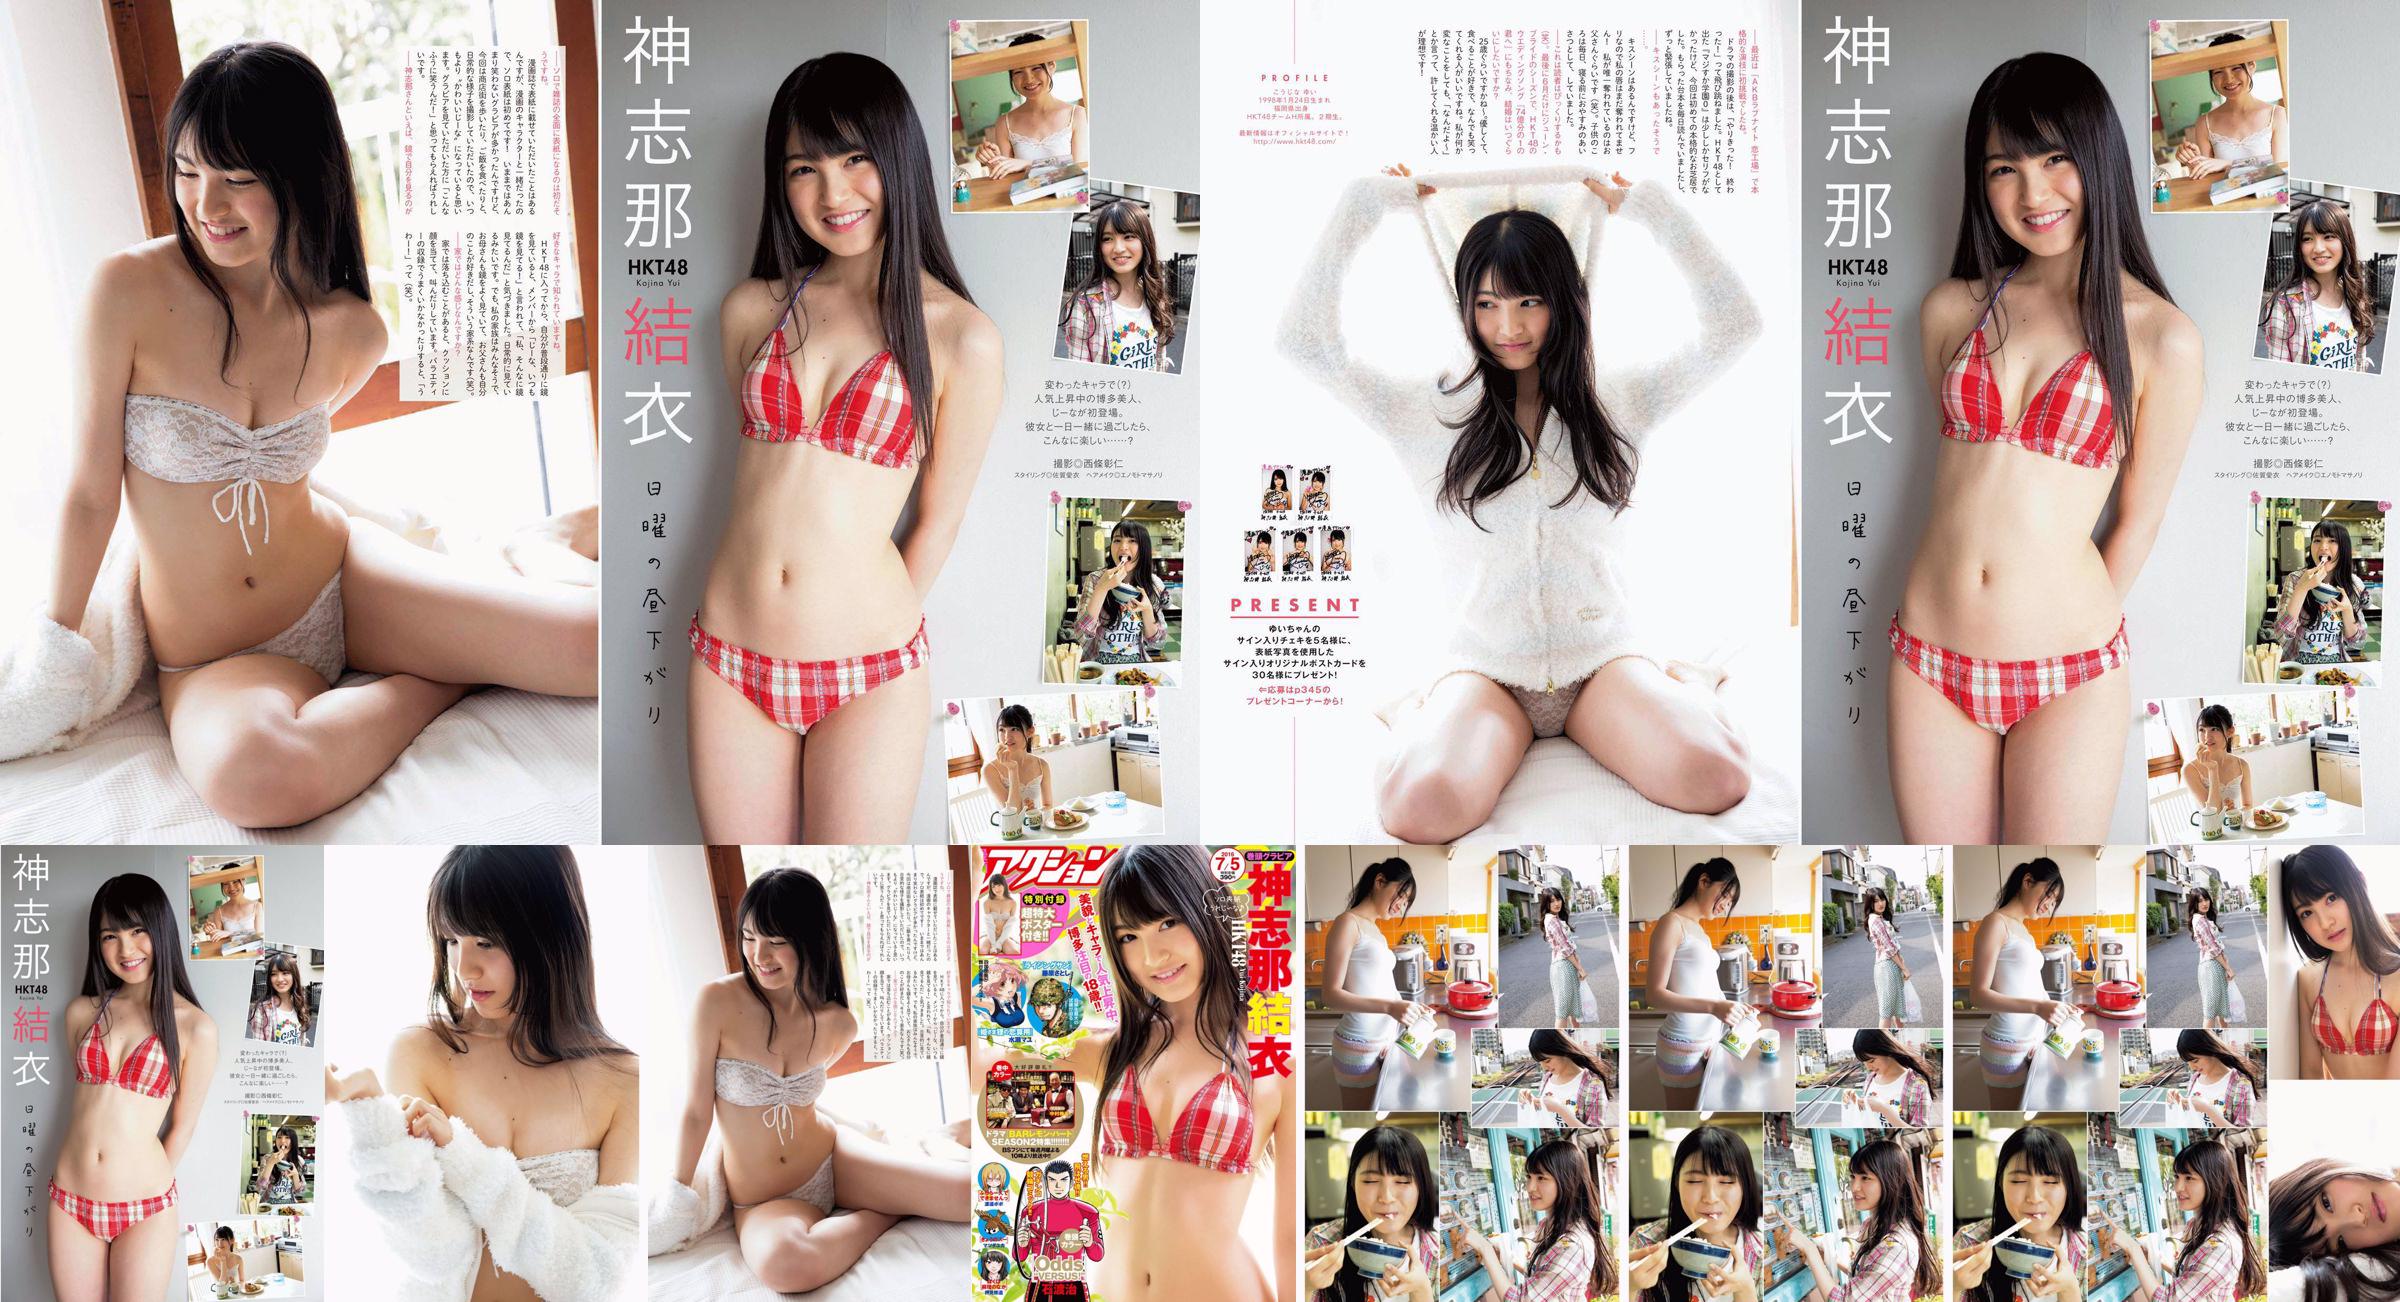 [Manga Action] Shinshina Yui 2016 No.13 Photo Magazine No.0d3689 Trang 3